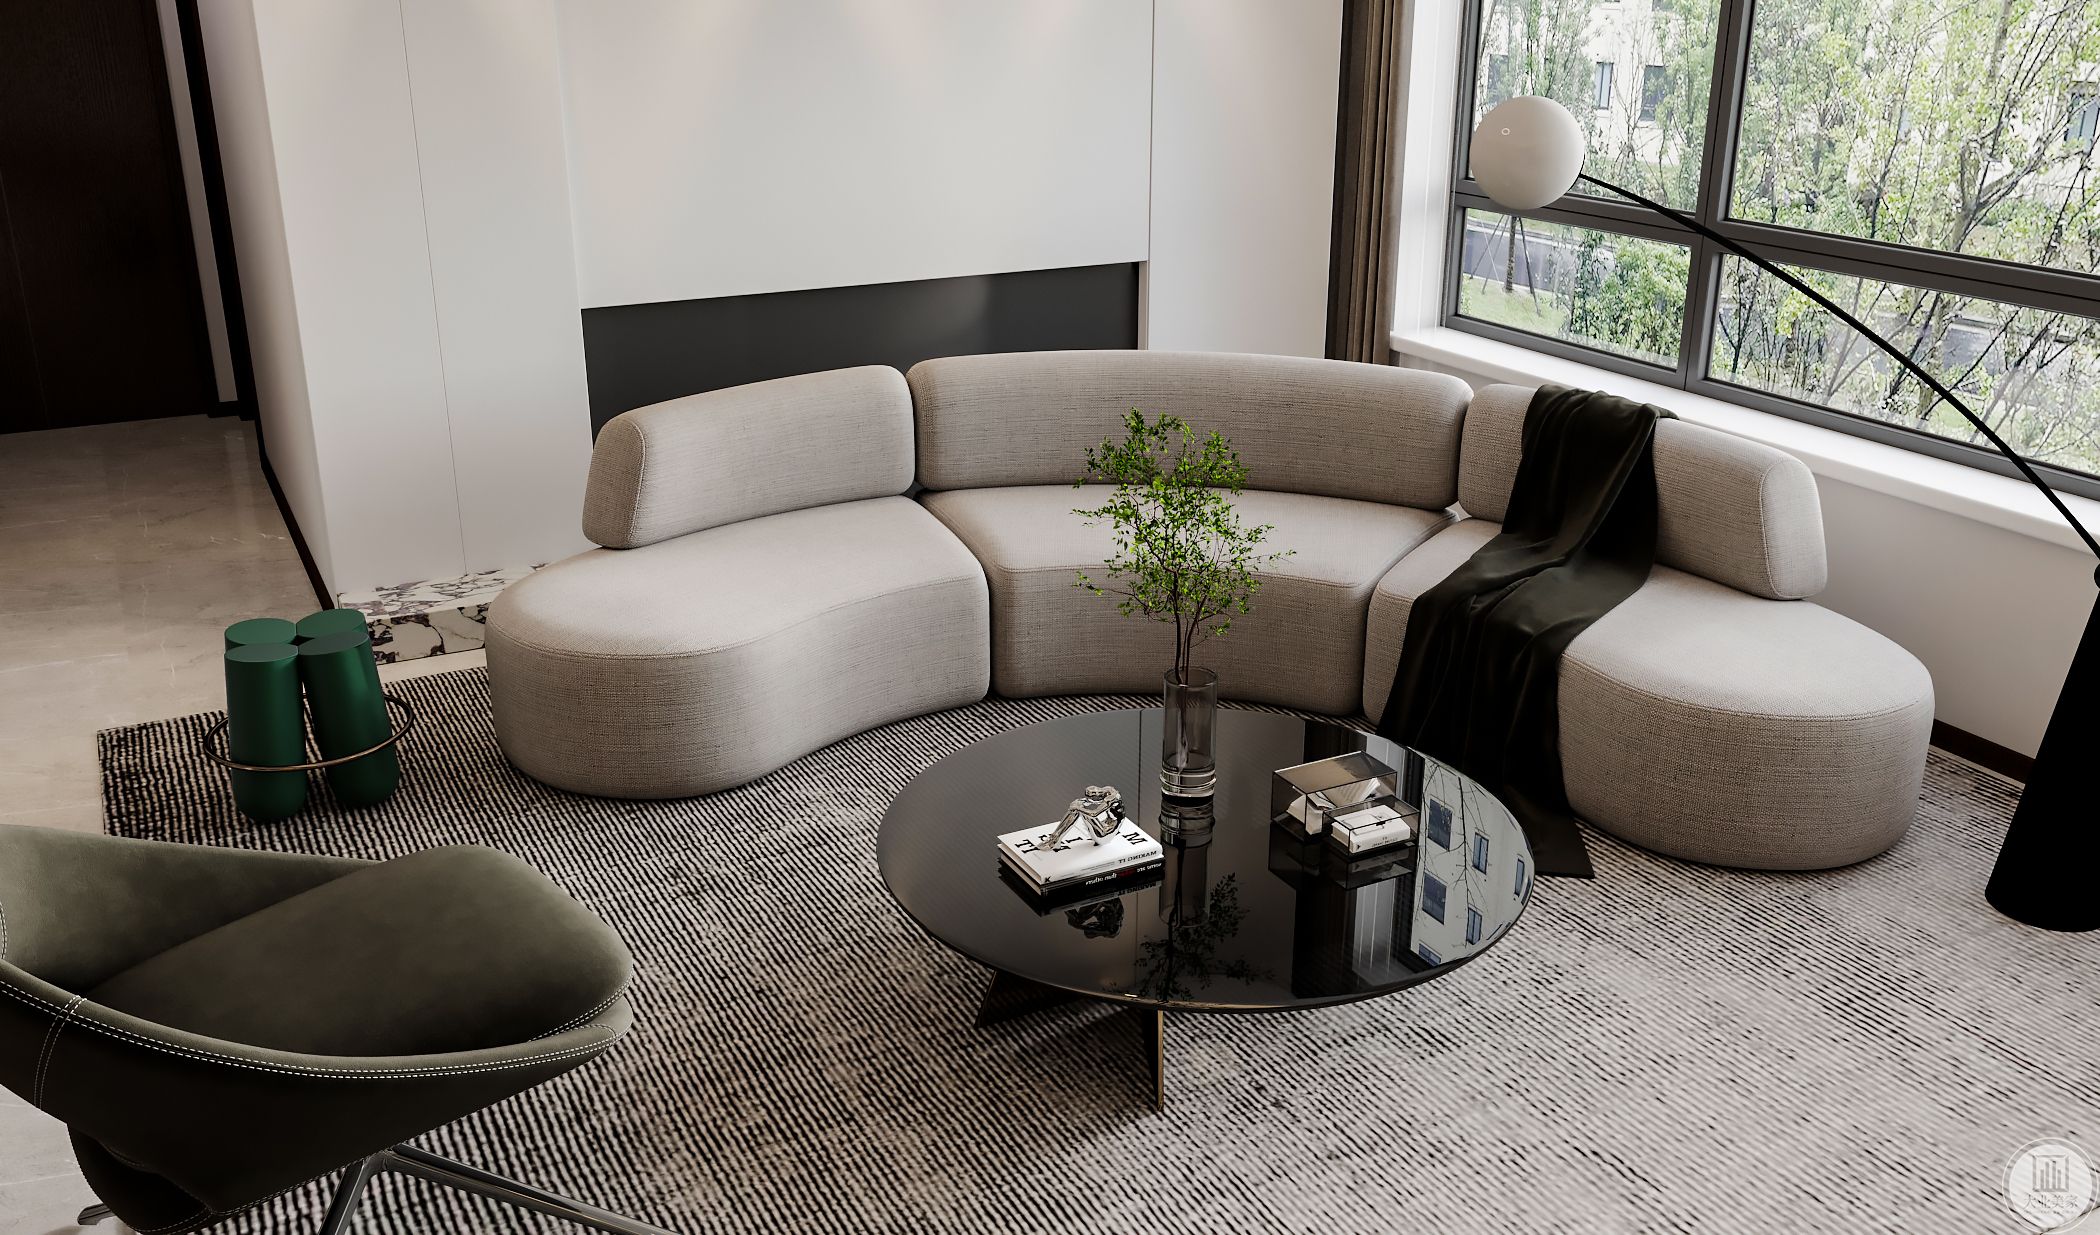 弧形布艺沙发搭配皮质单椅、玻璃质感茶几让整个空间不再单调